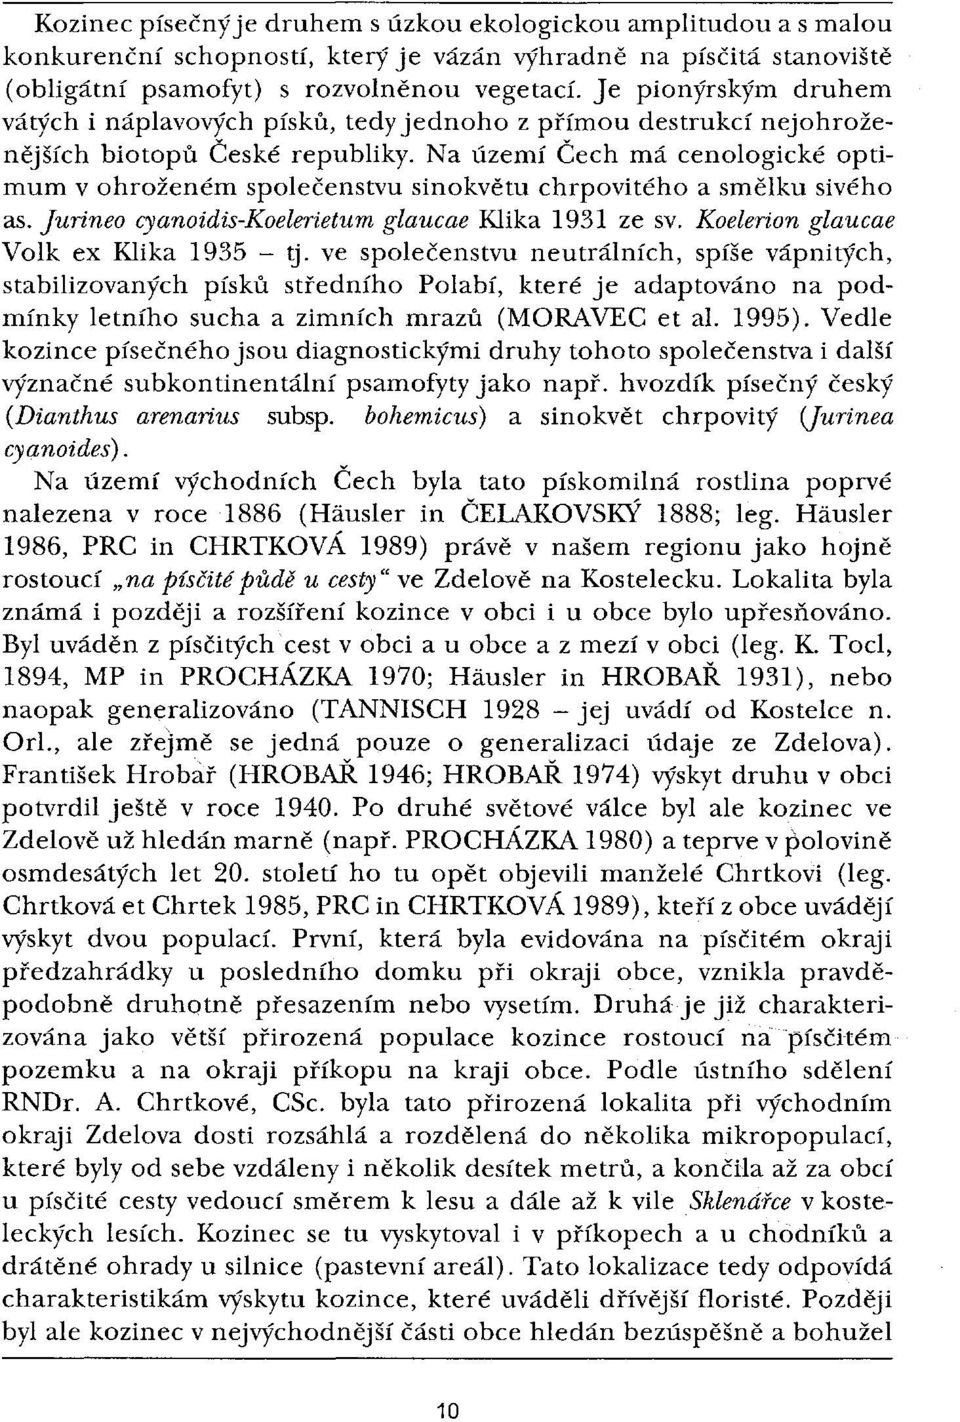 Na území Čech má cenologické optimum v ohroženém společenstvu sinokvětu chrpovitého a smělku sivého as. Jurineo cyanoidis-koelerietum glaucae Klika 1931 ze sv. Koelerion glaucae Volk ex Klika 1935-9.